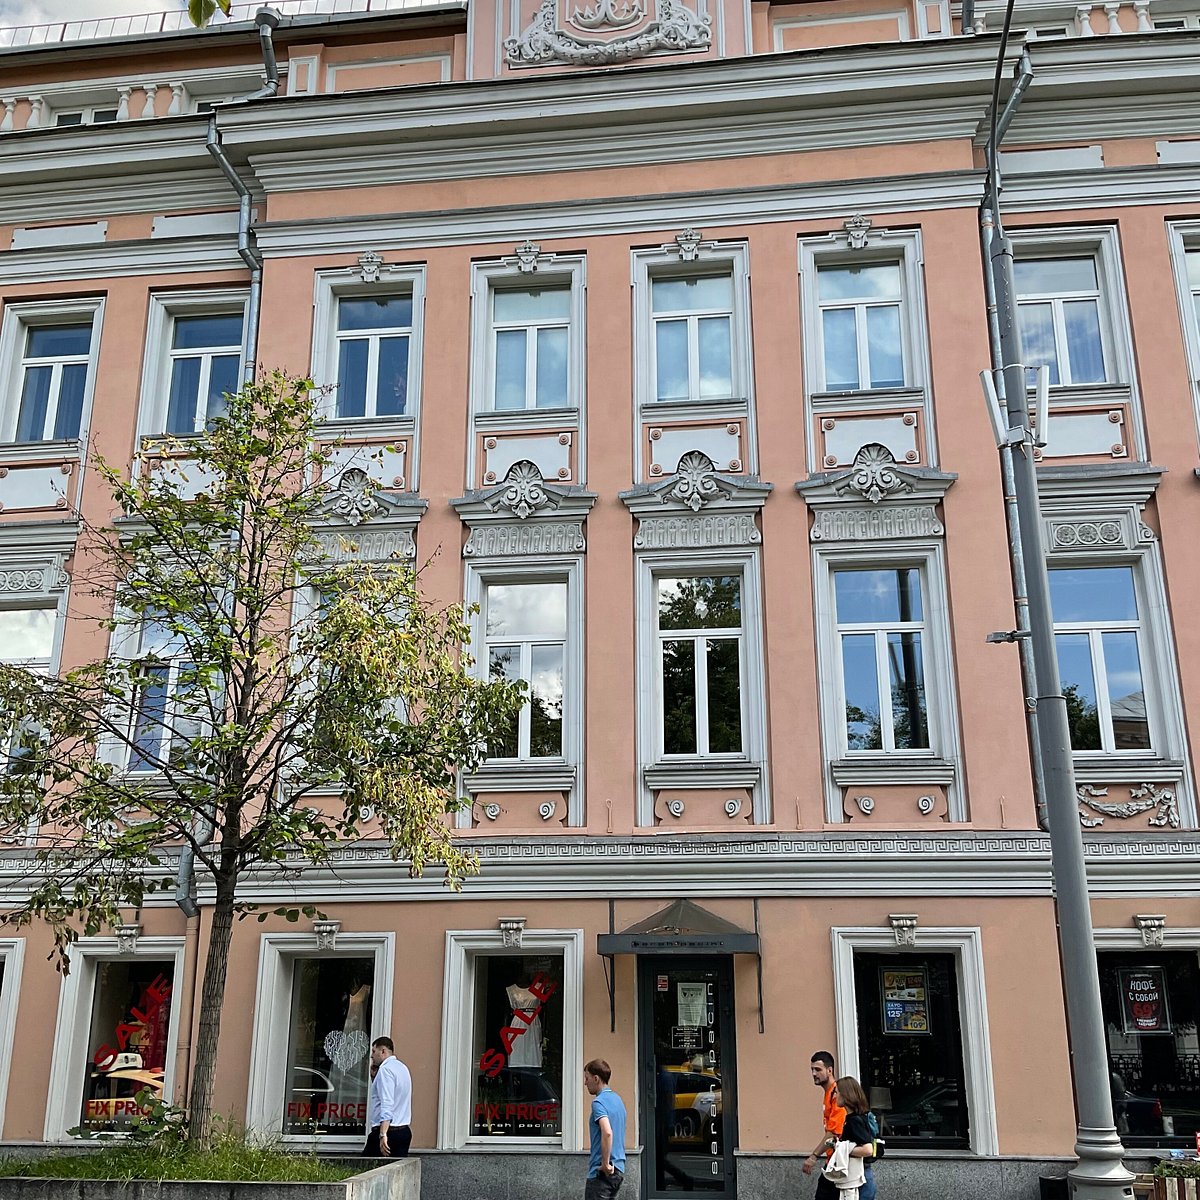 PROFITABLE HOUSE OF ARKHANGELSK MERCHANTS (Moscou): Ce qu'il faut savoir